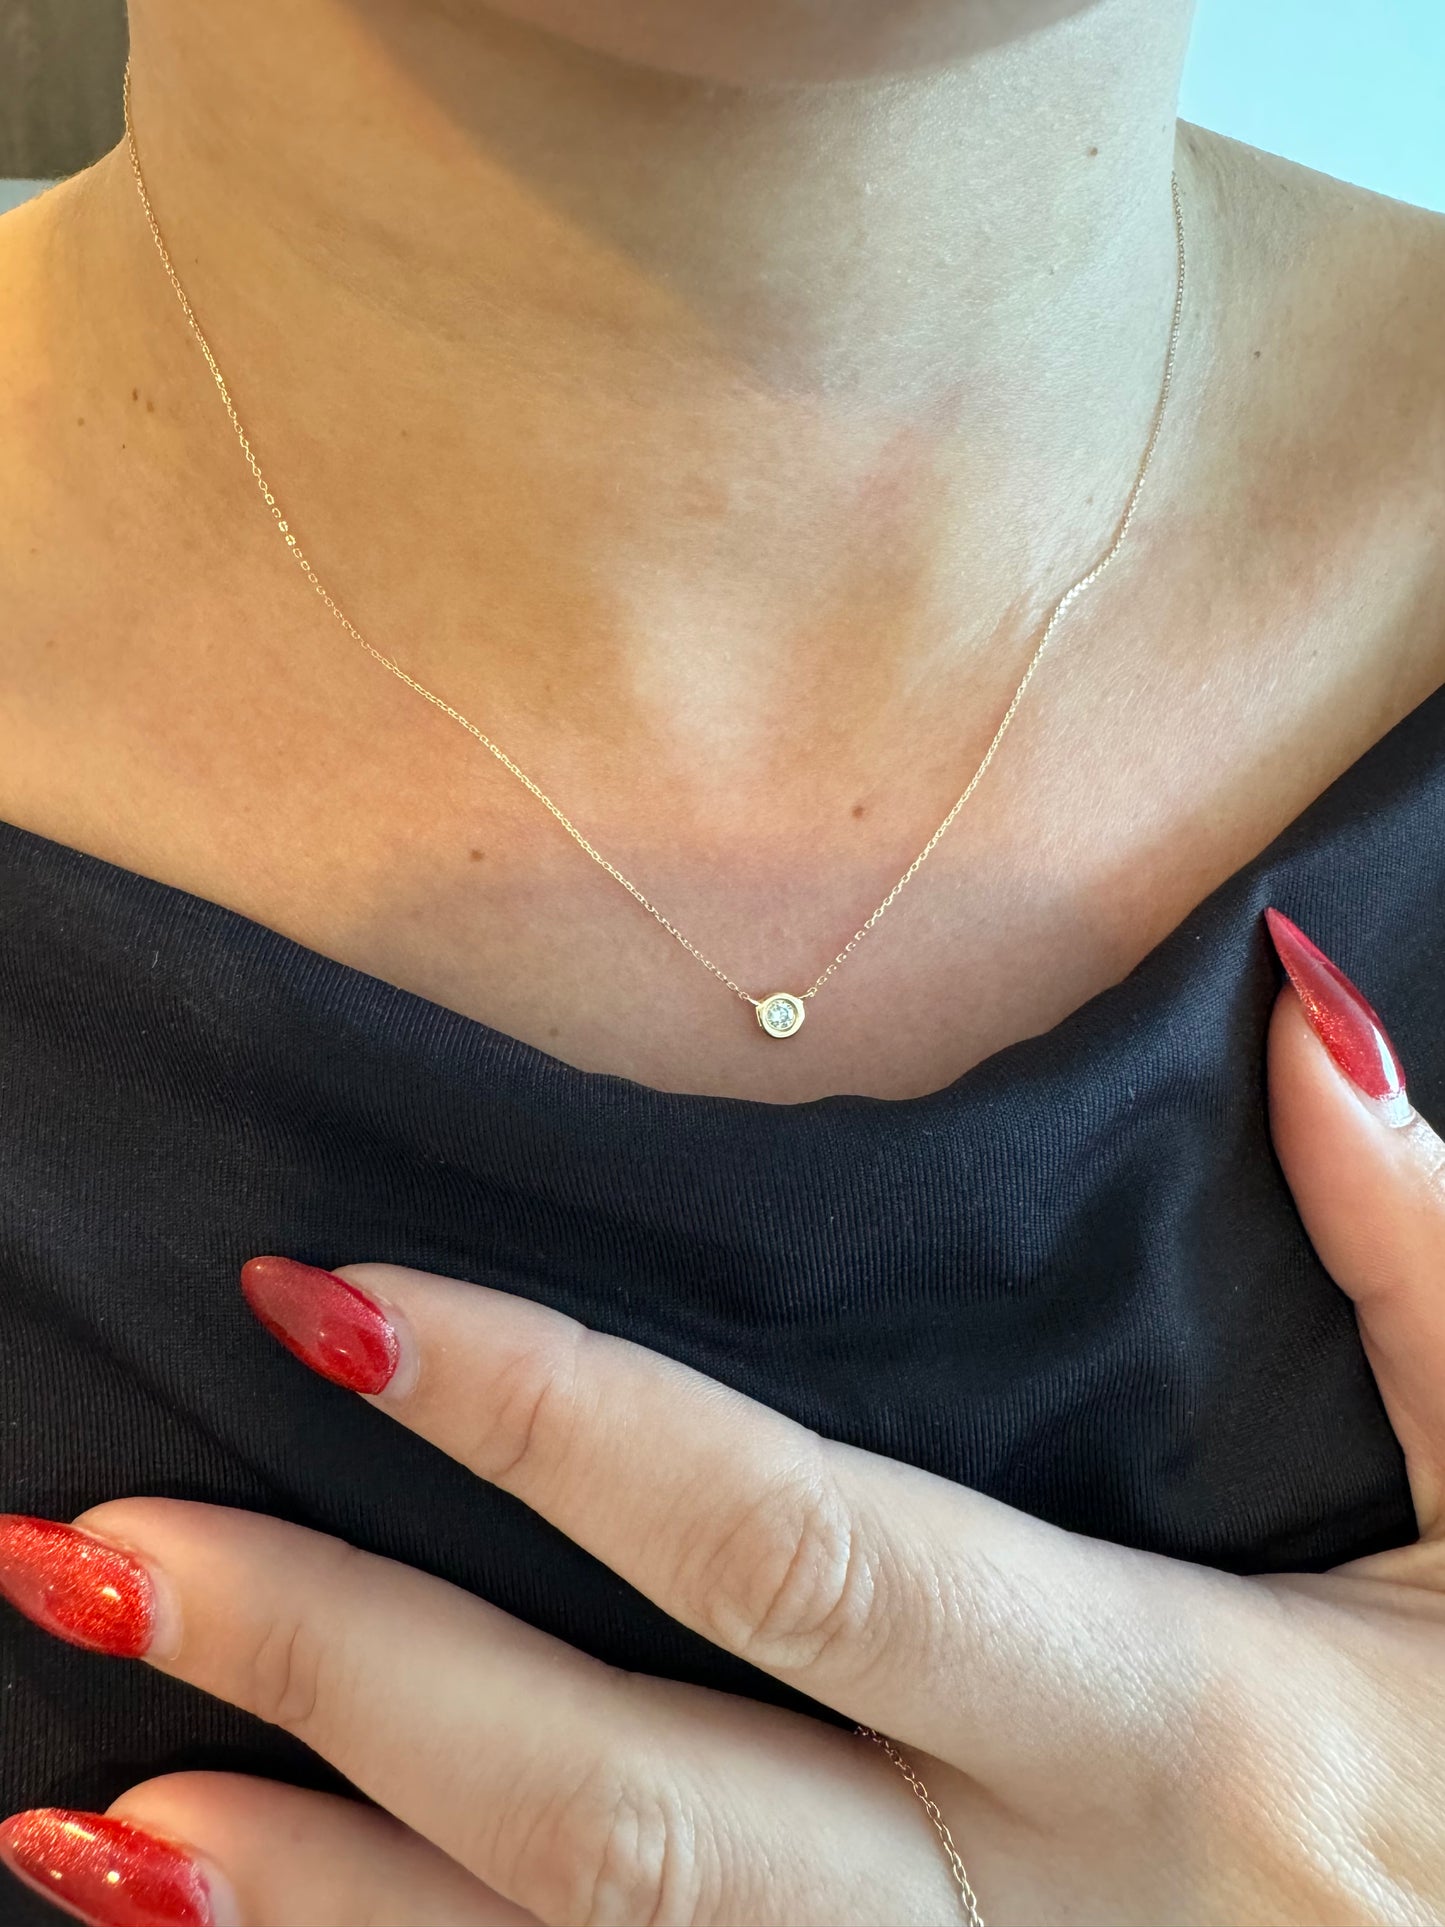 14k Bezel Diamond Necklace